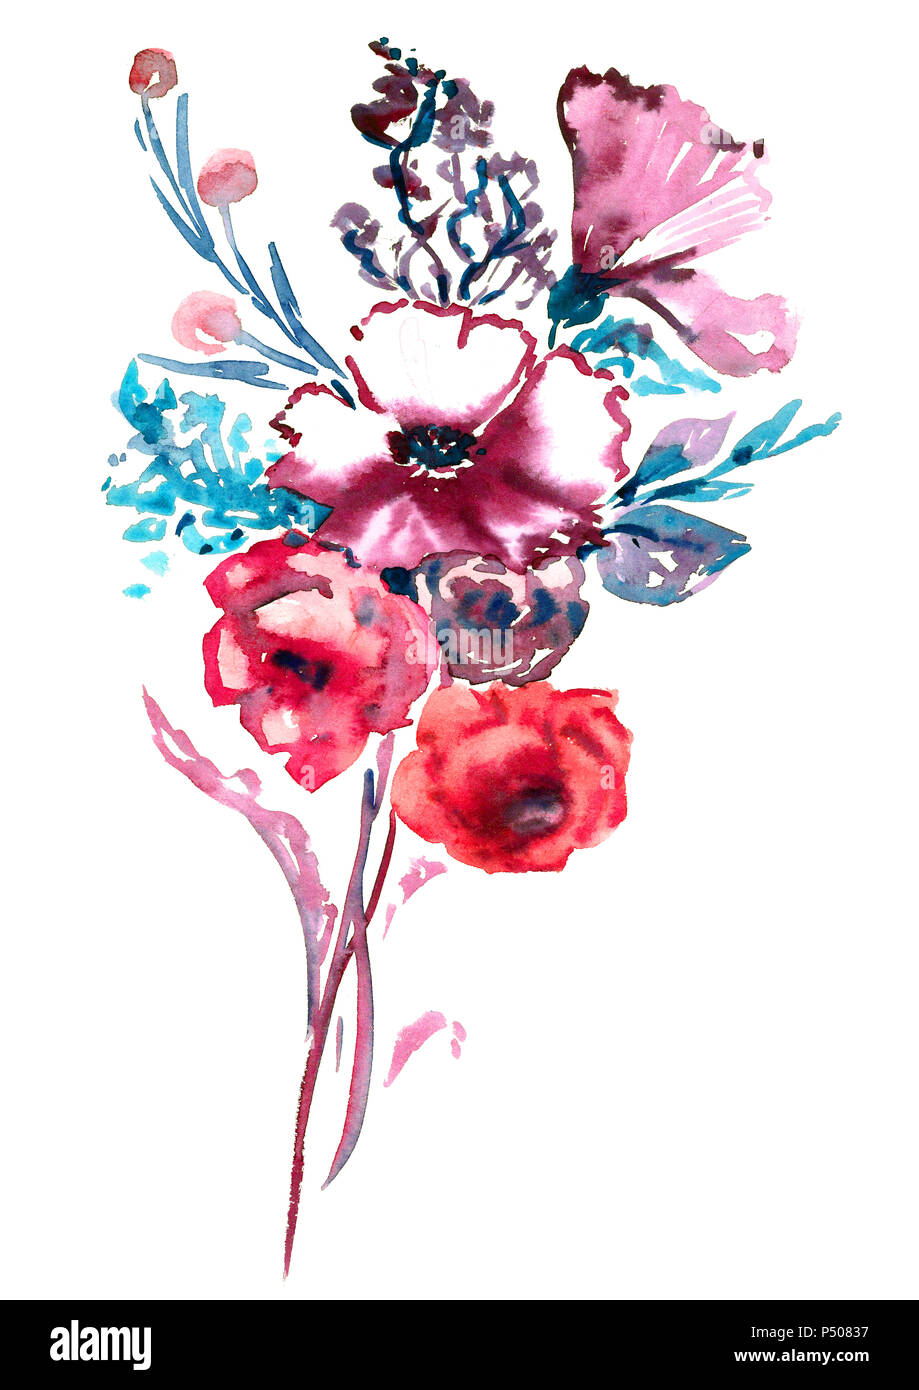 Bouquet de roses roses et fleurs bleu mauve sauvage, feuilles et baies  isolées, illustration aquarelle peinte à la main dans un style moderne  (points faibles Photo Stock - Alamy